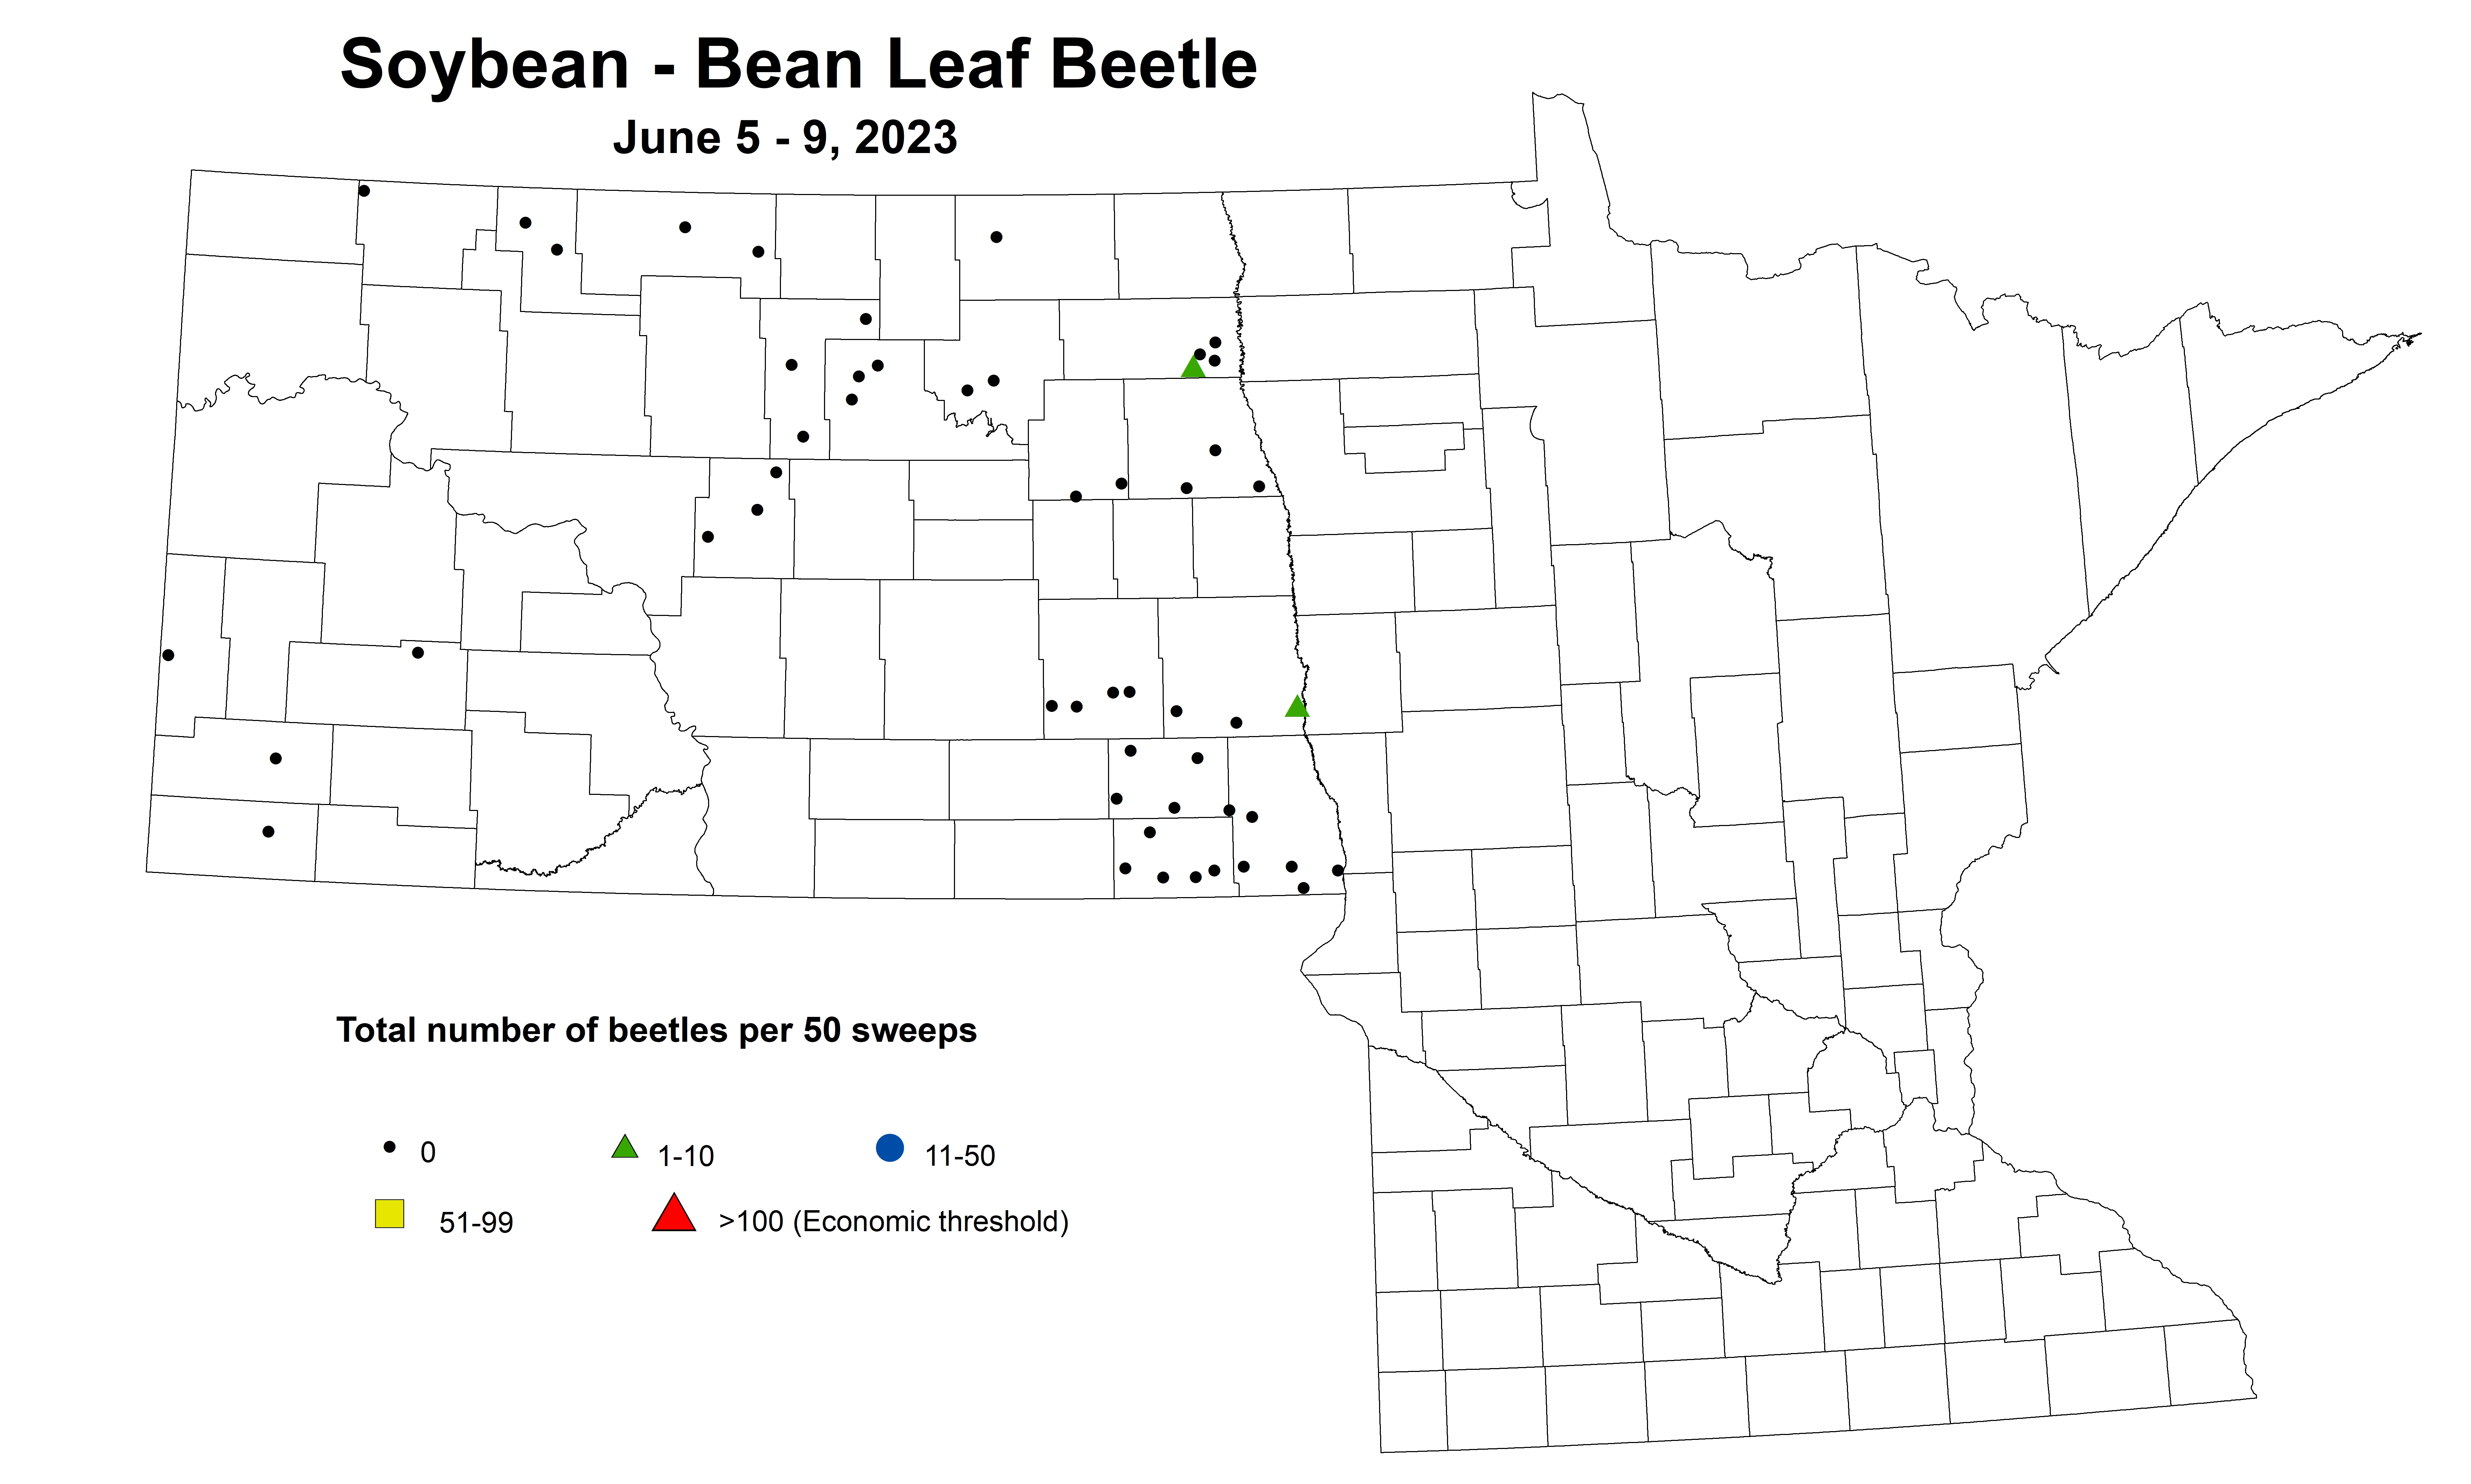 soybean total number of beetles per 50 sweeps June 5-9 2023